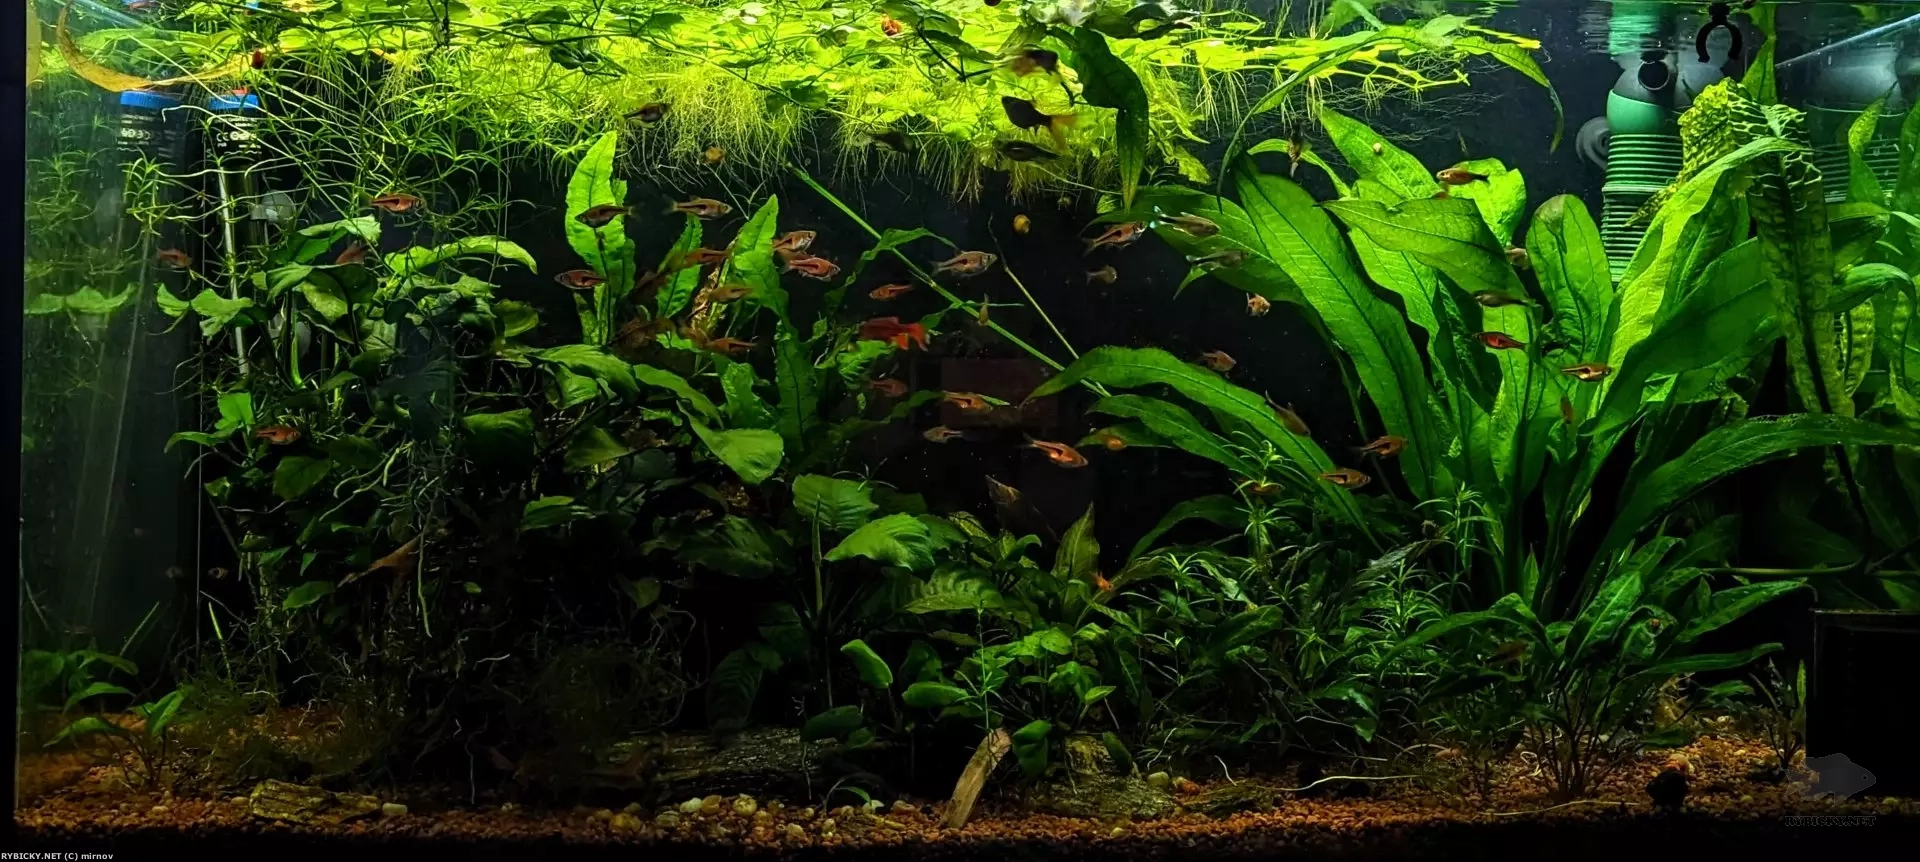 Jak dlouho muze být akvárium bez filtru?